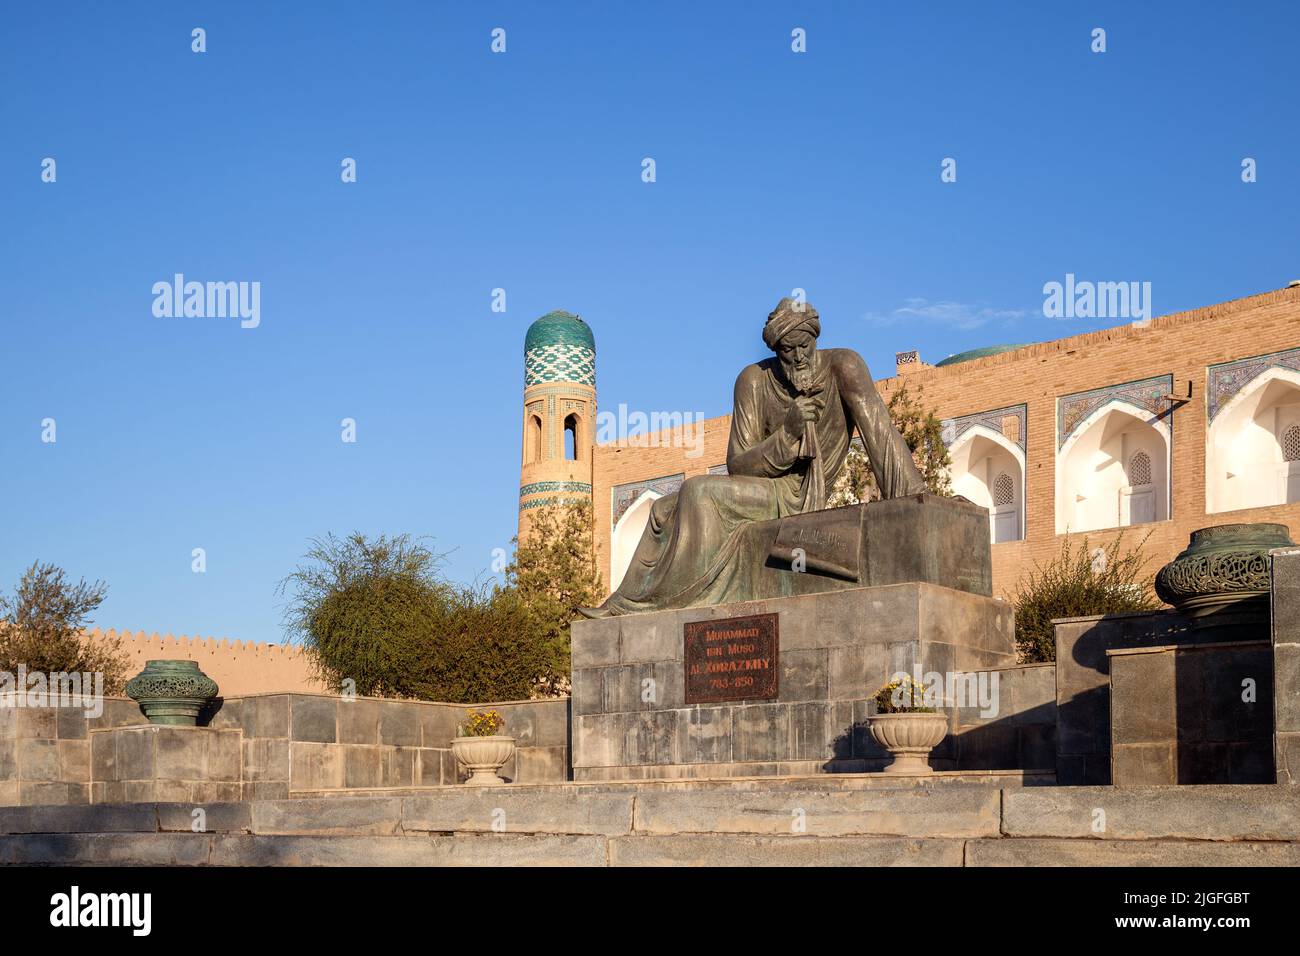 Khiva, Ouzbékistan - octobre 2016 : monument à l'éminent mathématicien du Moyen-âge Muhammad ibn Musa al-Khwarizmi installé à la porte occidentale de celui-ci Banque D'Images